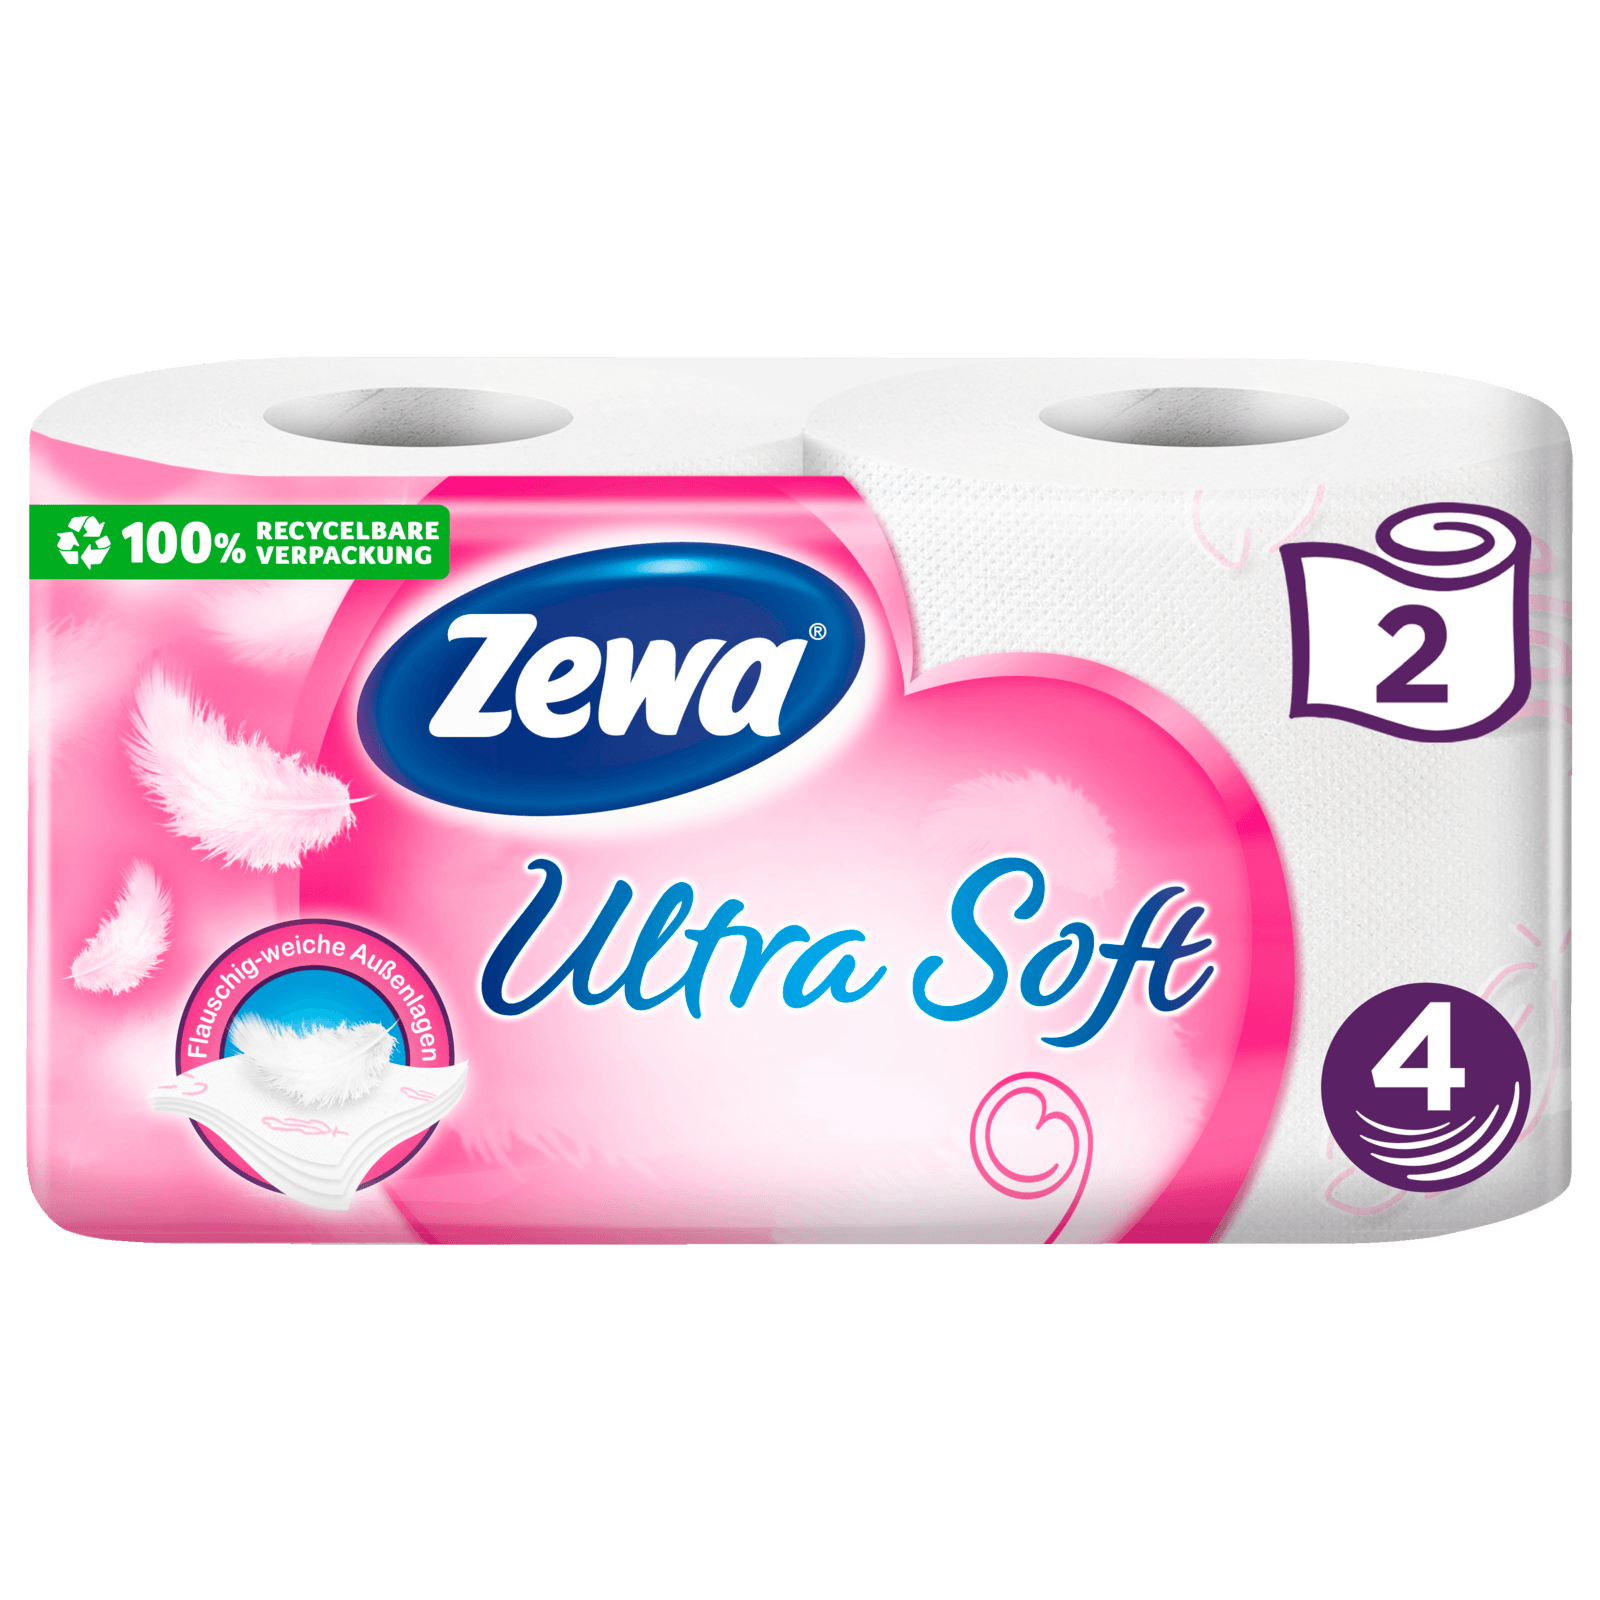 Zewa ultra soft Toilettenpapier extra weiches WC-Papier 4-lagig mit zuverlässi 